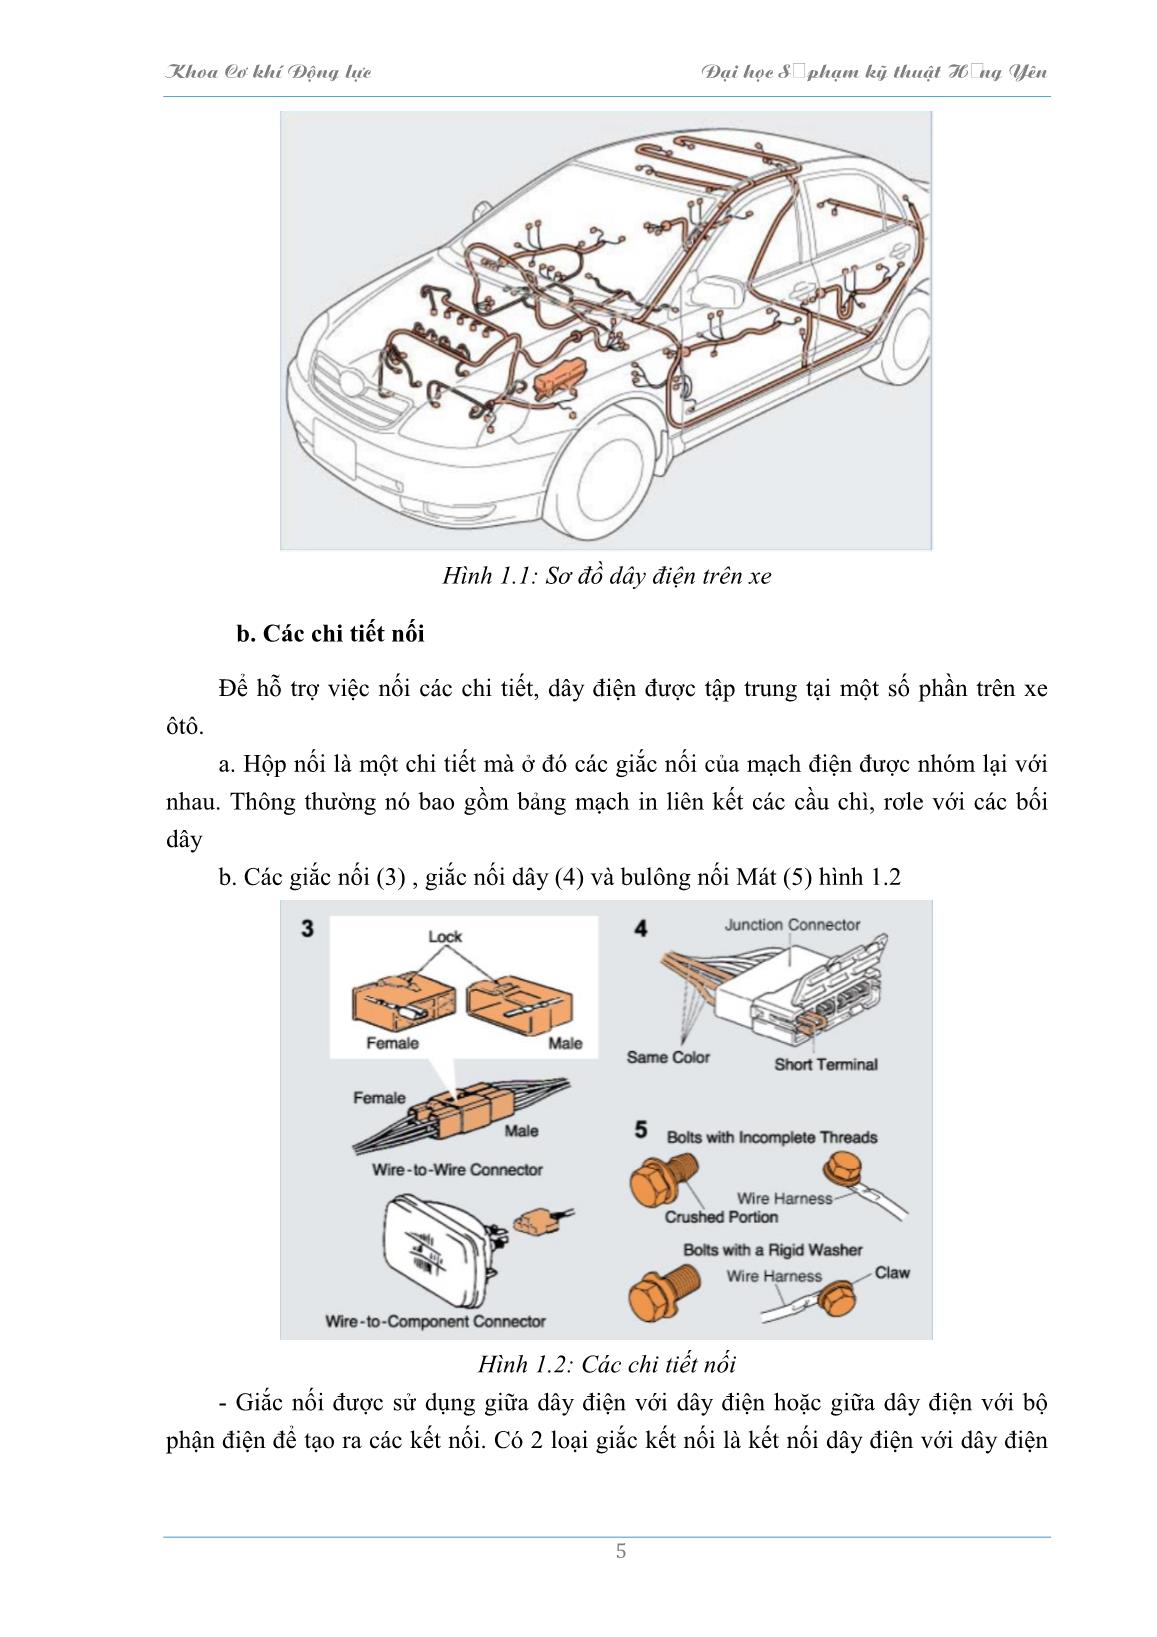 Bài giảng Hệ thống điện thân xe và điều khiển tự động trên ôtô - Trường Đại học Sư phạm Kỹ thuật Hưng Yên trang 6